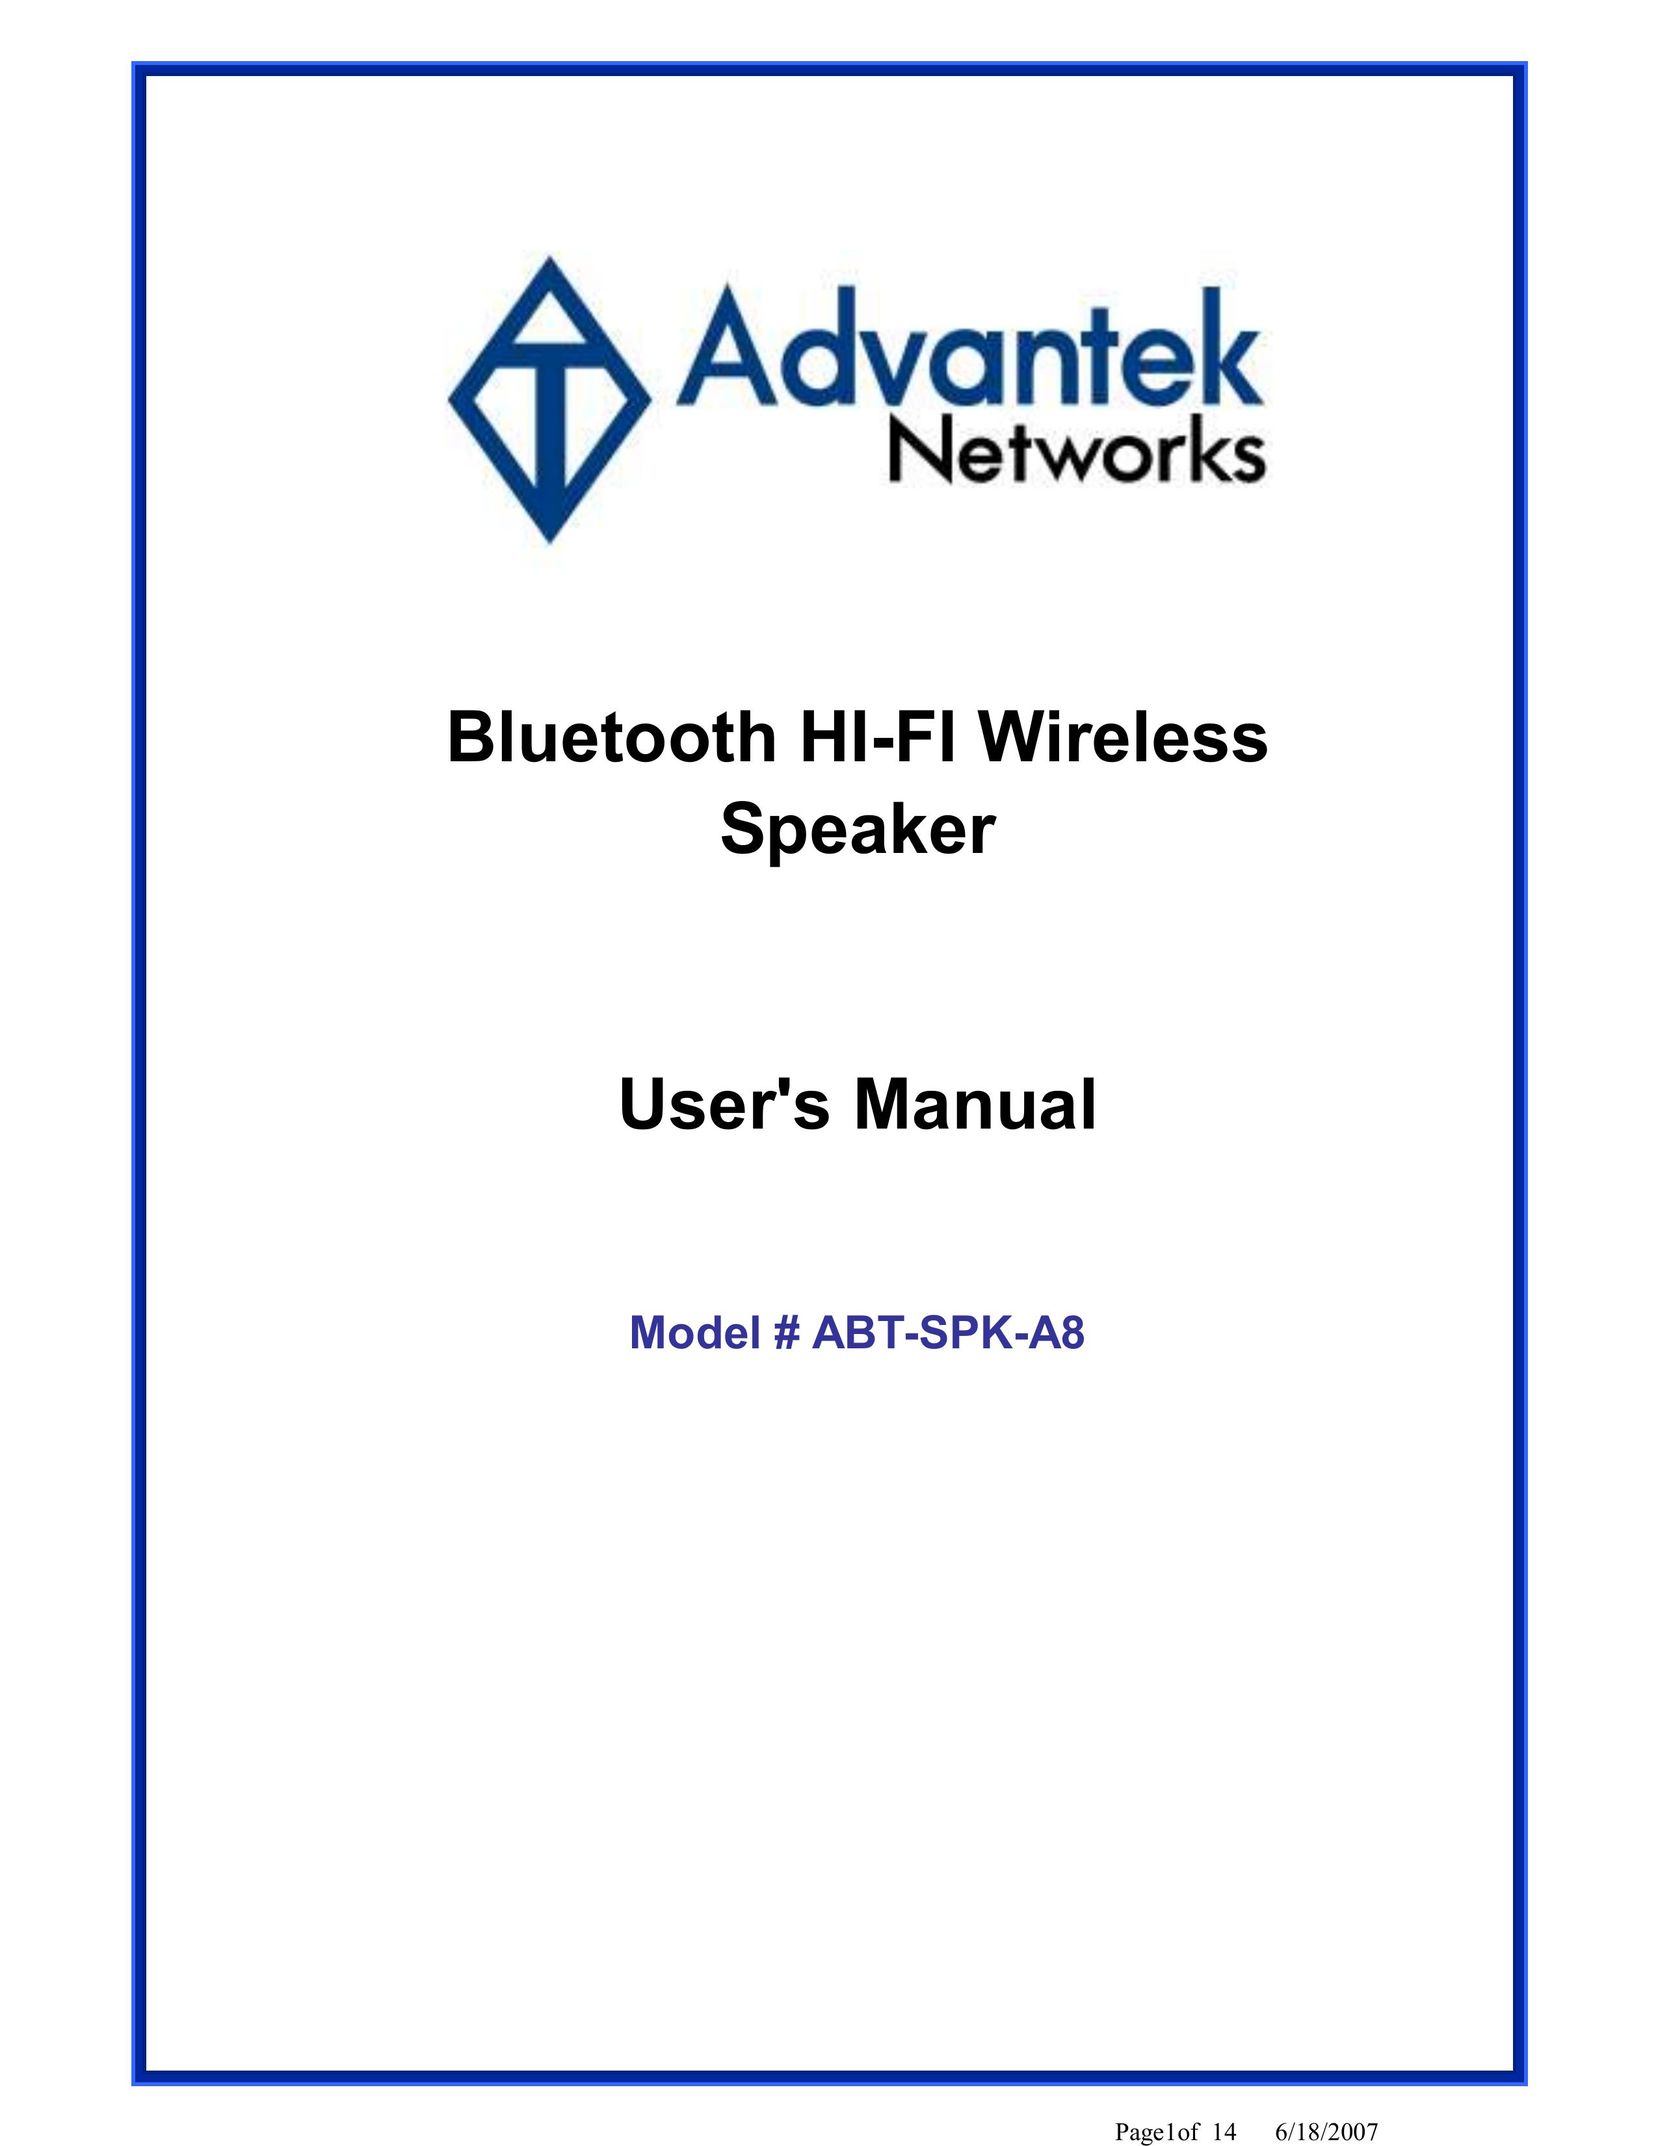 Advantek Networks ABT-SPK-A8 Speaker System User Manual